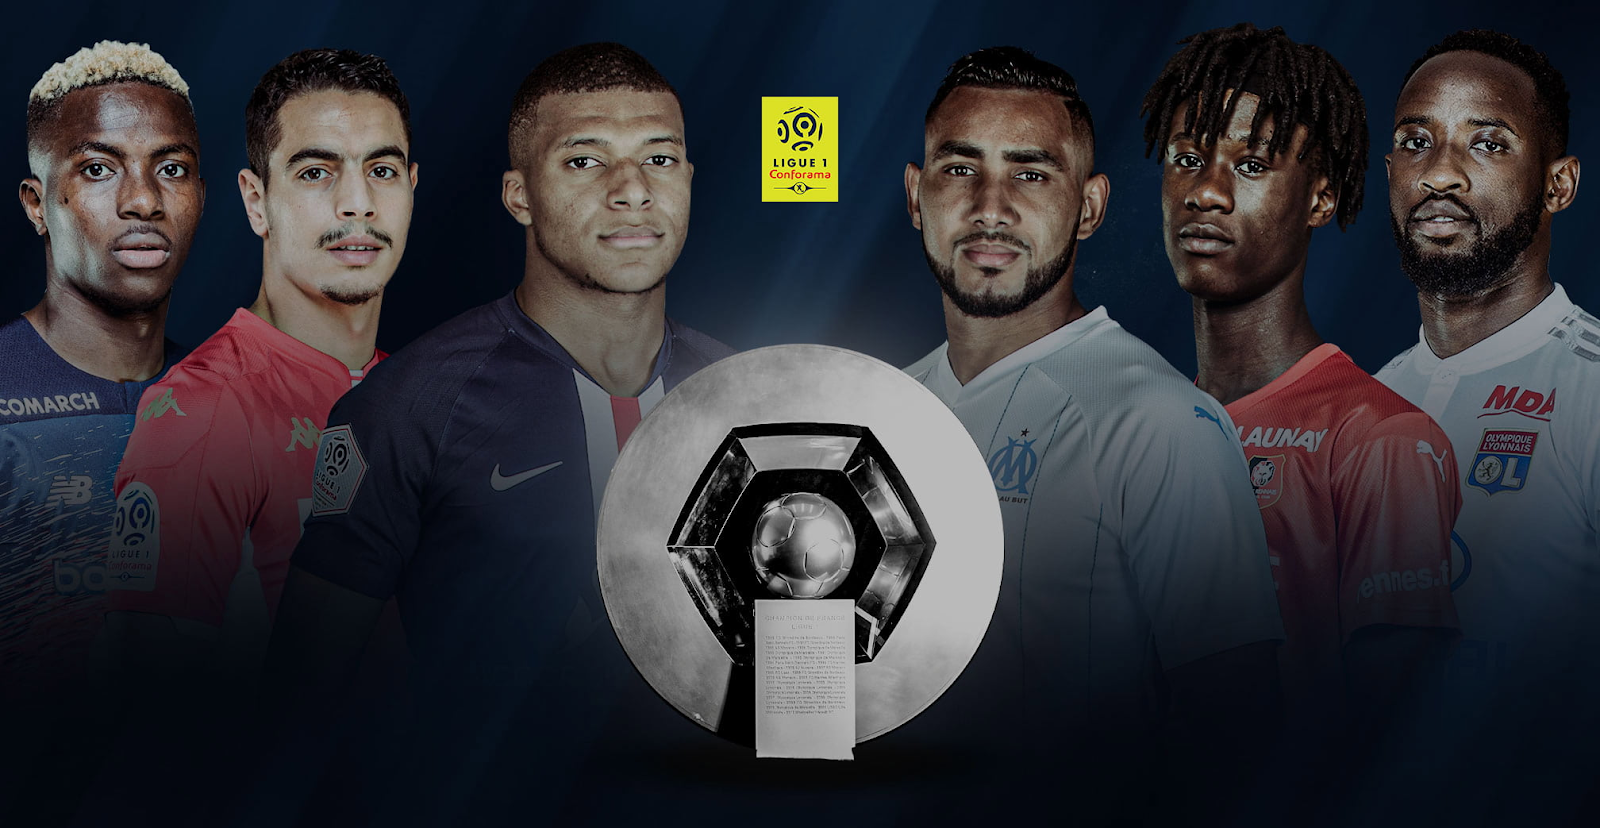 Lịch thi đấu Ligue 1 có cung cấp thông tin về đội bóng và cầu thủ